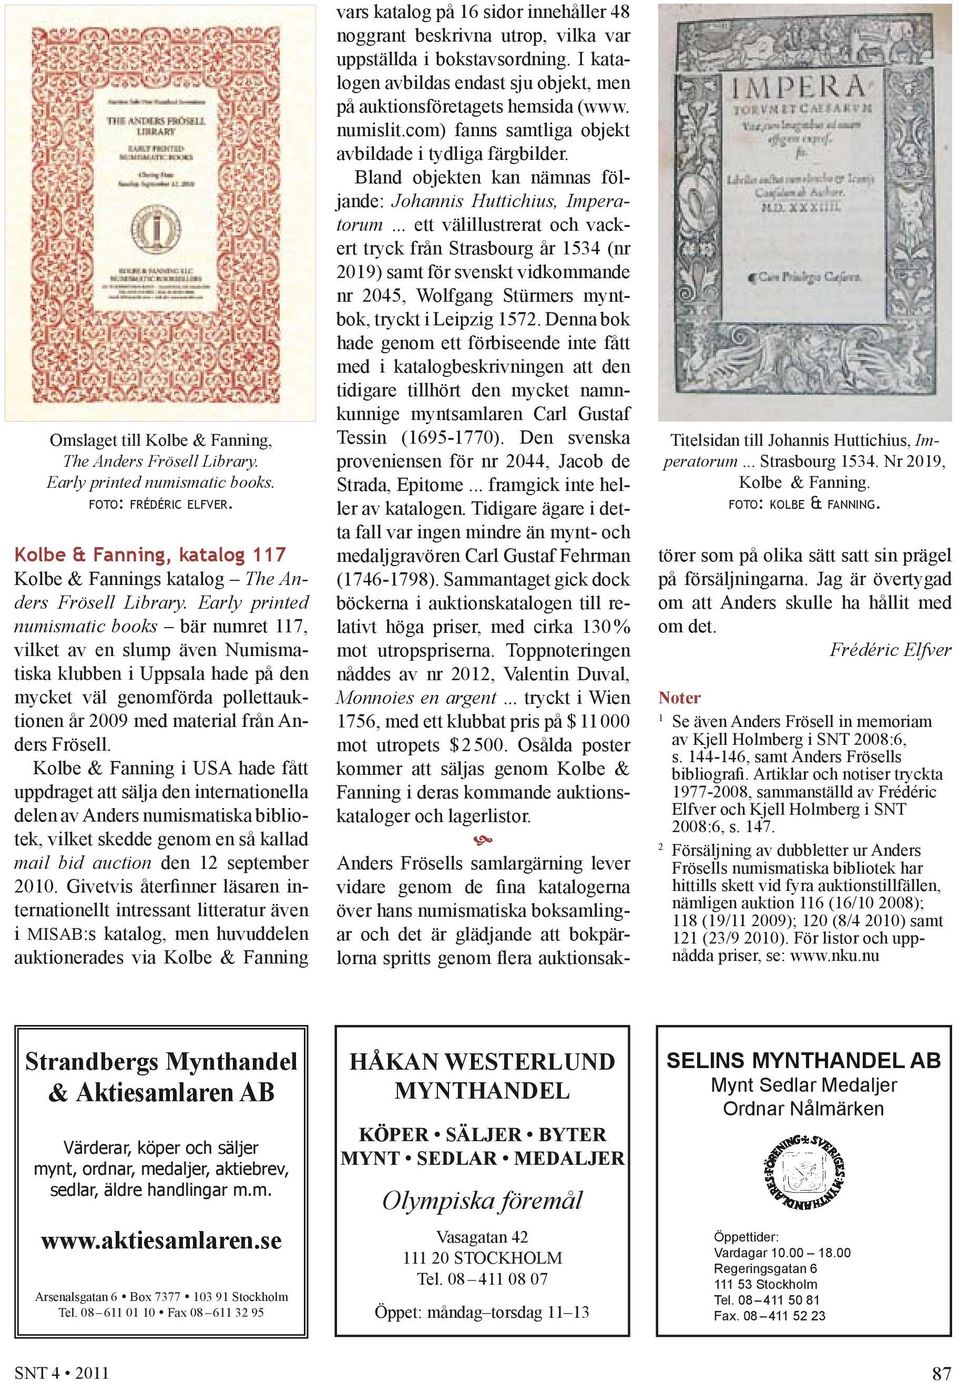 Kolbe & Fanning i USA hade fått uppdraget att sälja den internationella delen av Anders numismatiska bibliotek, vilket skedde genom en så kallad mail bid auction den 12 september 2010.